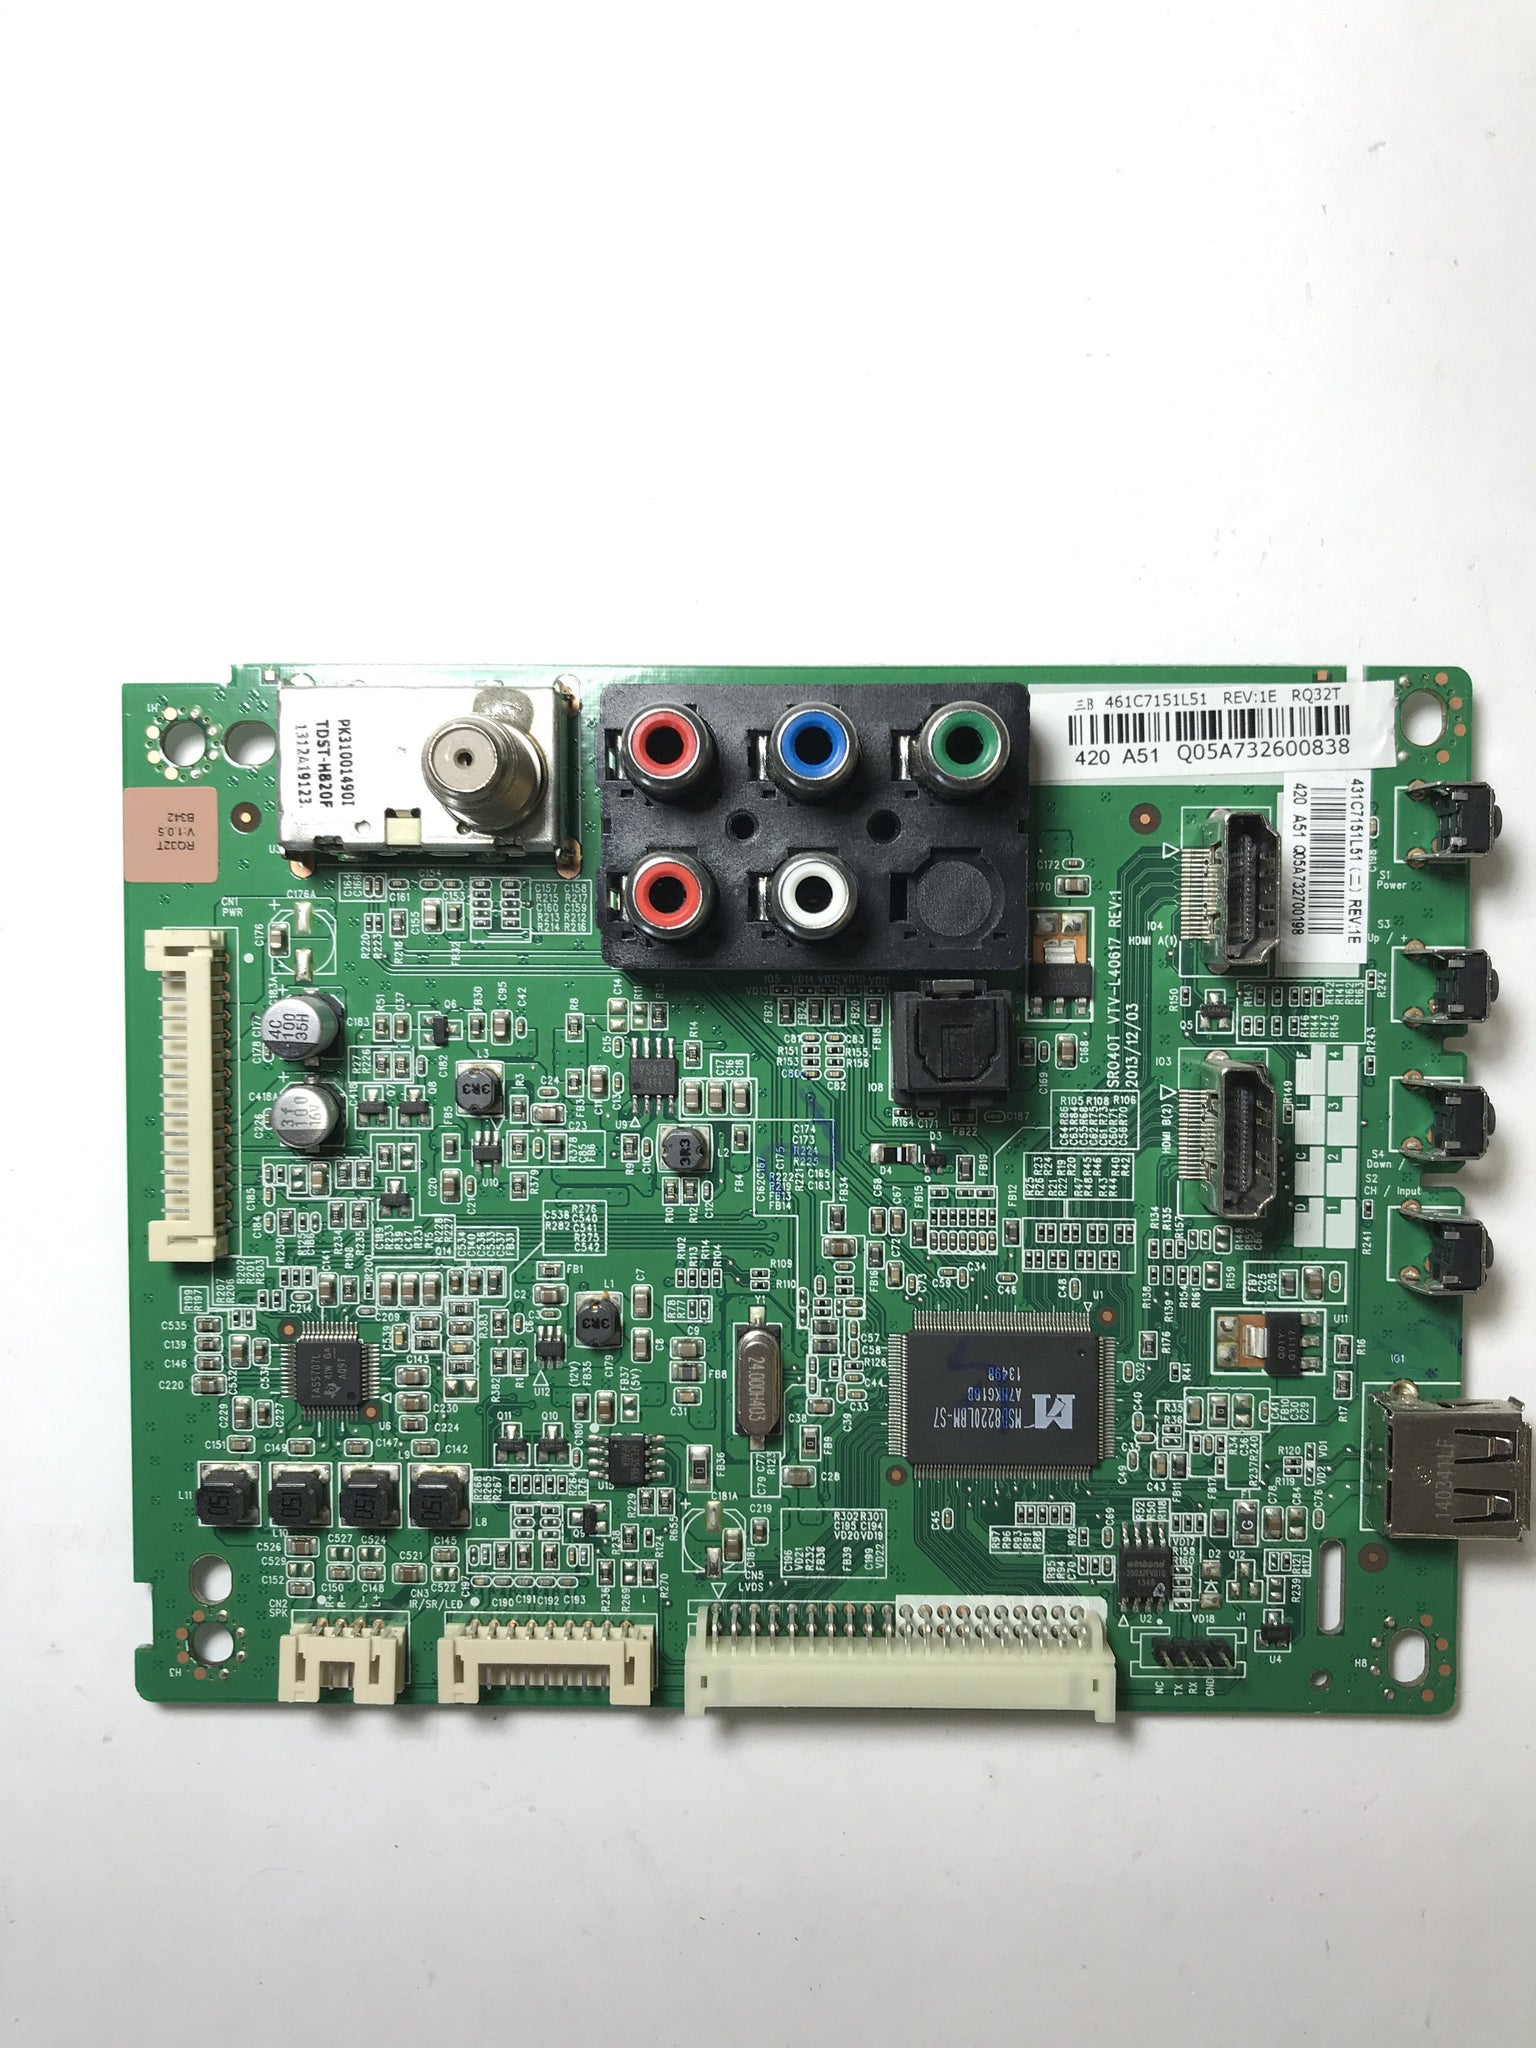 Toshiba 75037689 (461C7151l51) Main Board for 32L2400U